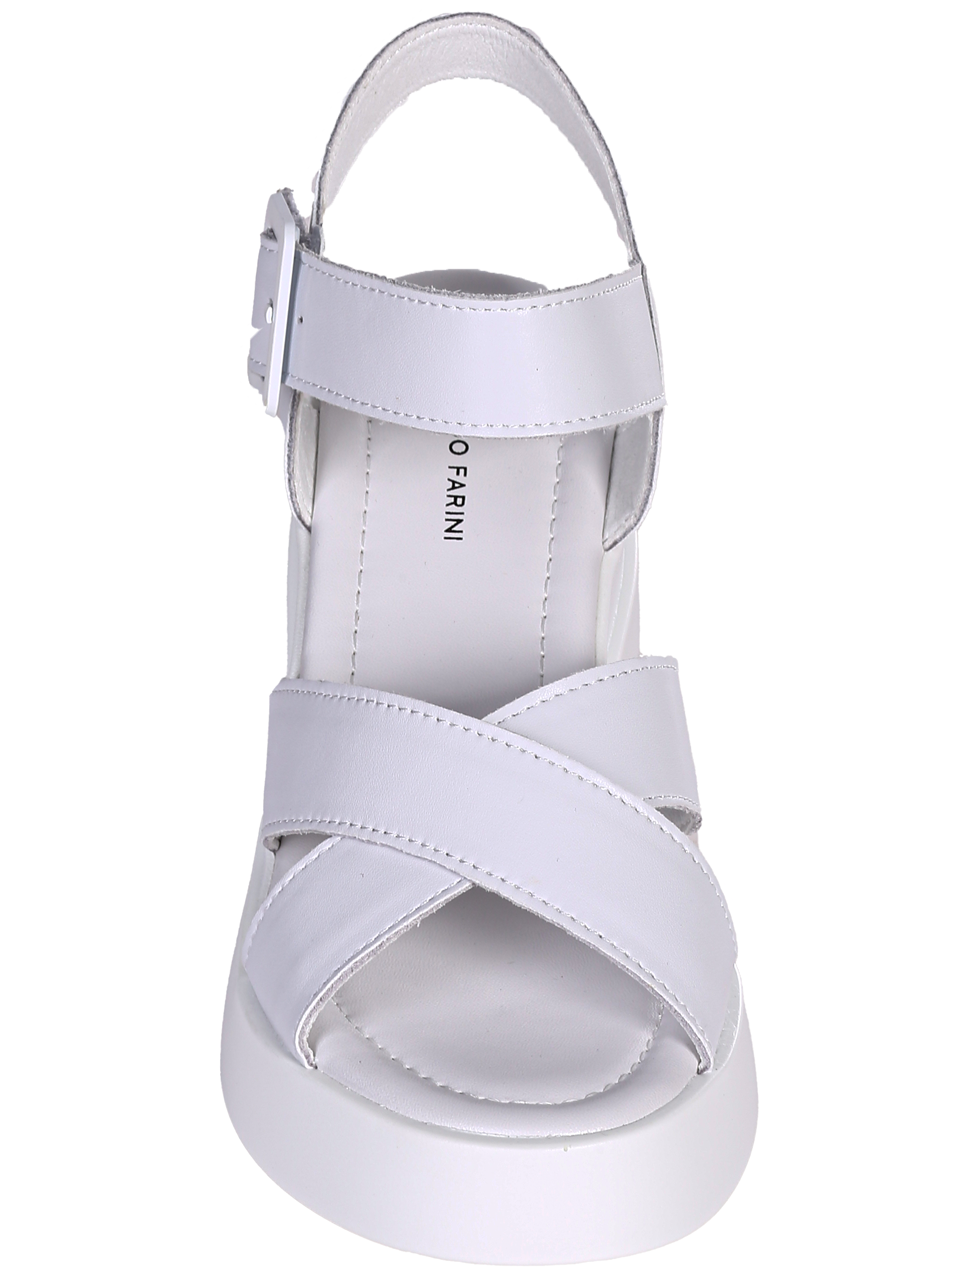 Ежедневни дамски сандали от естествена кожа в бяло 4AF-24148 white (23152)